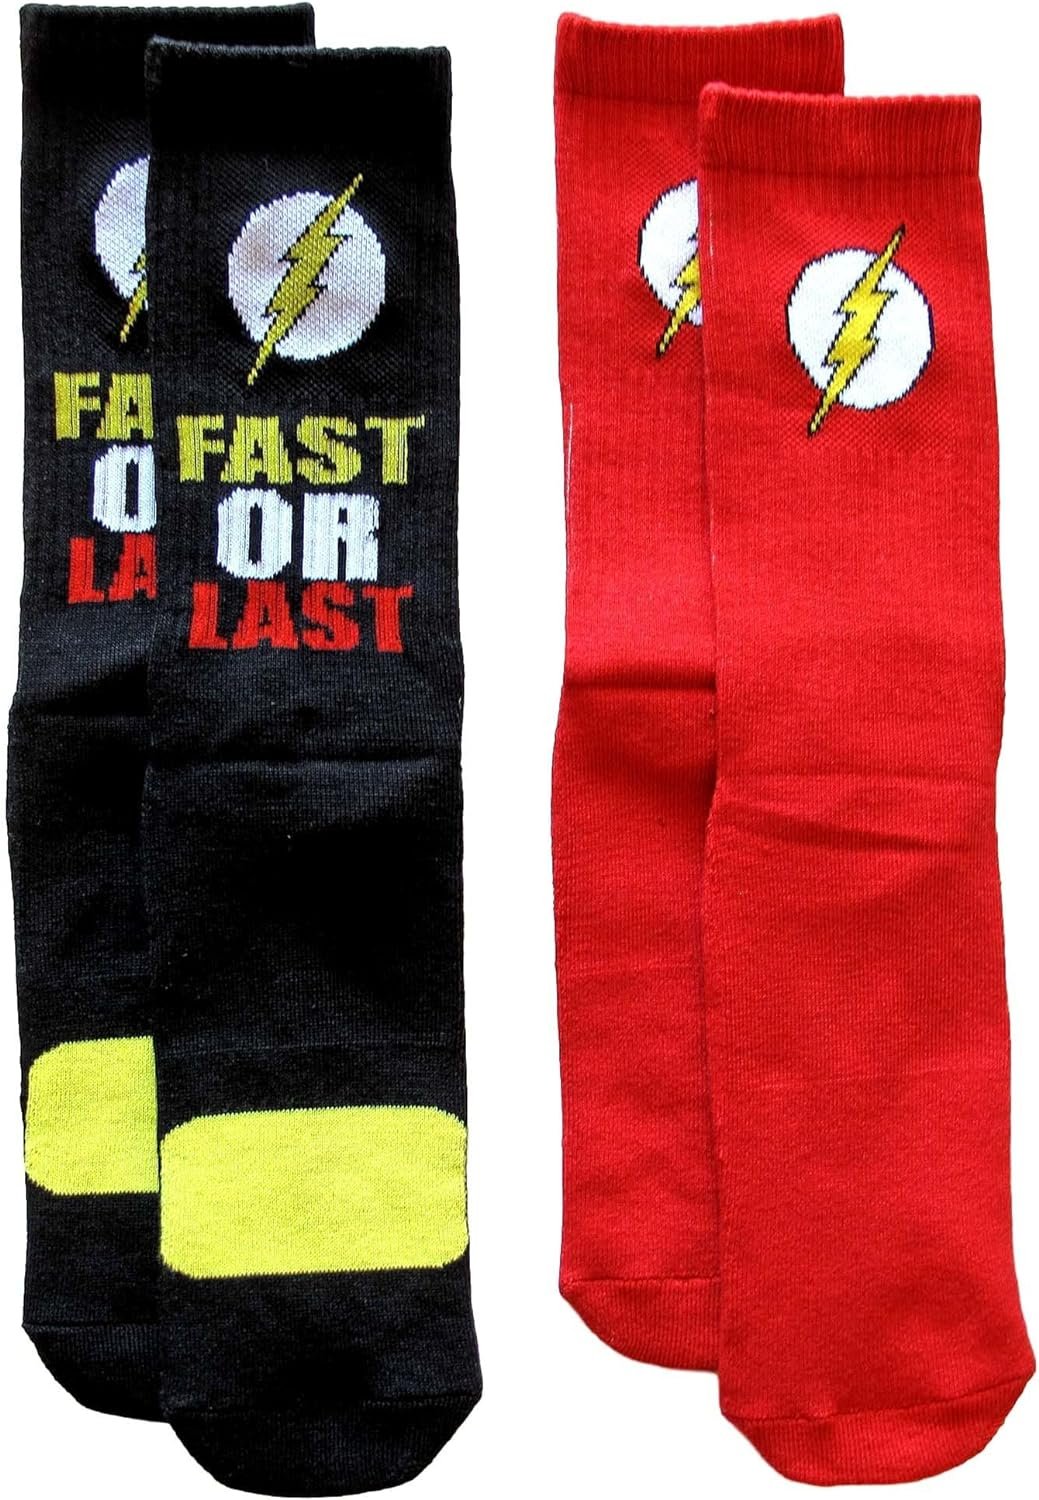 DC Comics Flash Logo Men’s Athletic Crew Socks 2 Pair Pack Review 1